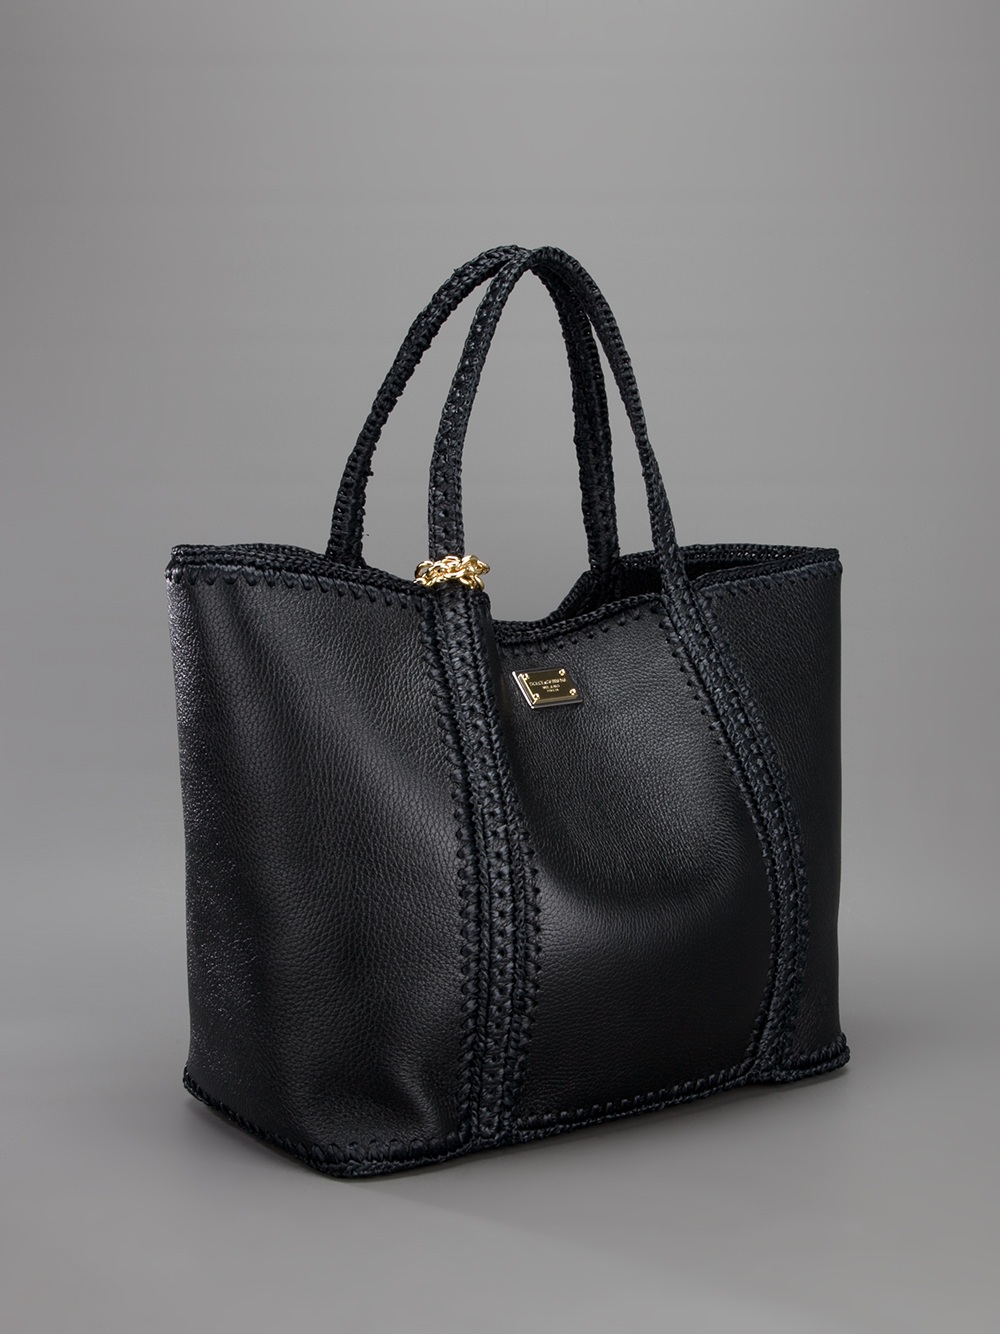 Handbags And Totes | IQS Executive